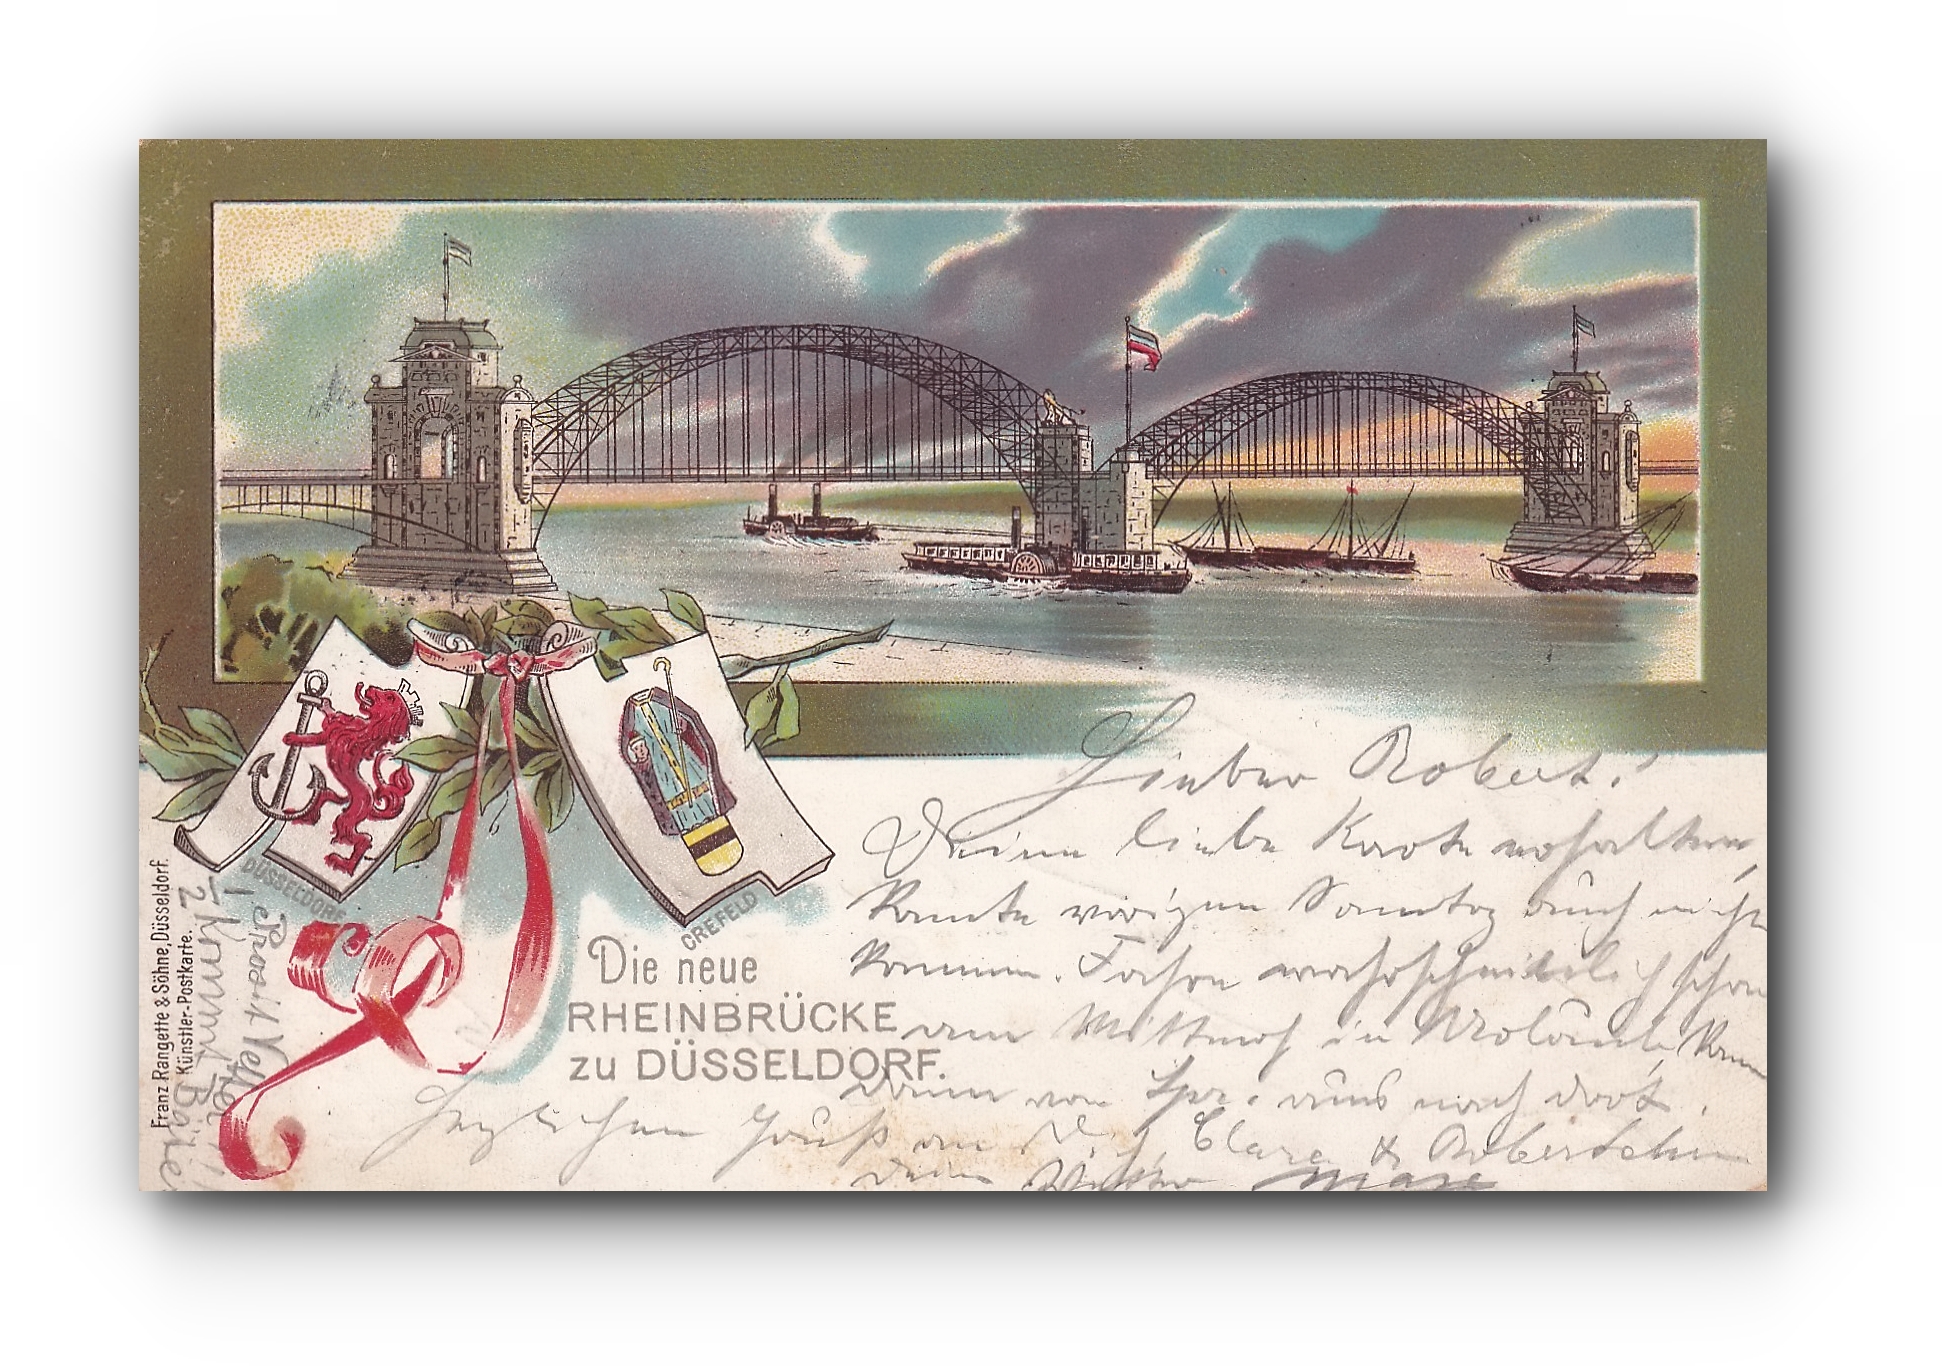 - Die Neue Rheinbrücke zu DÜSSELDORF - 17.12.1898 -